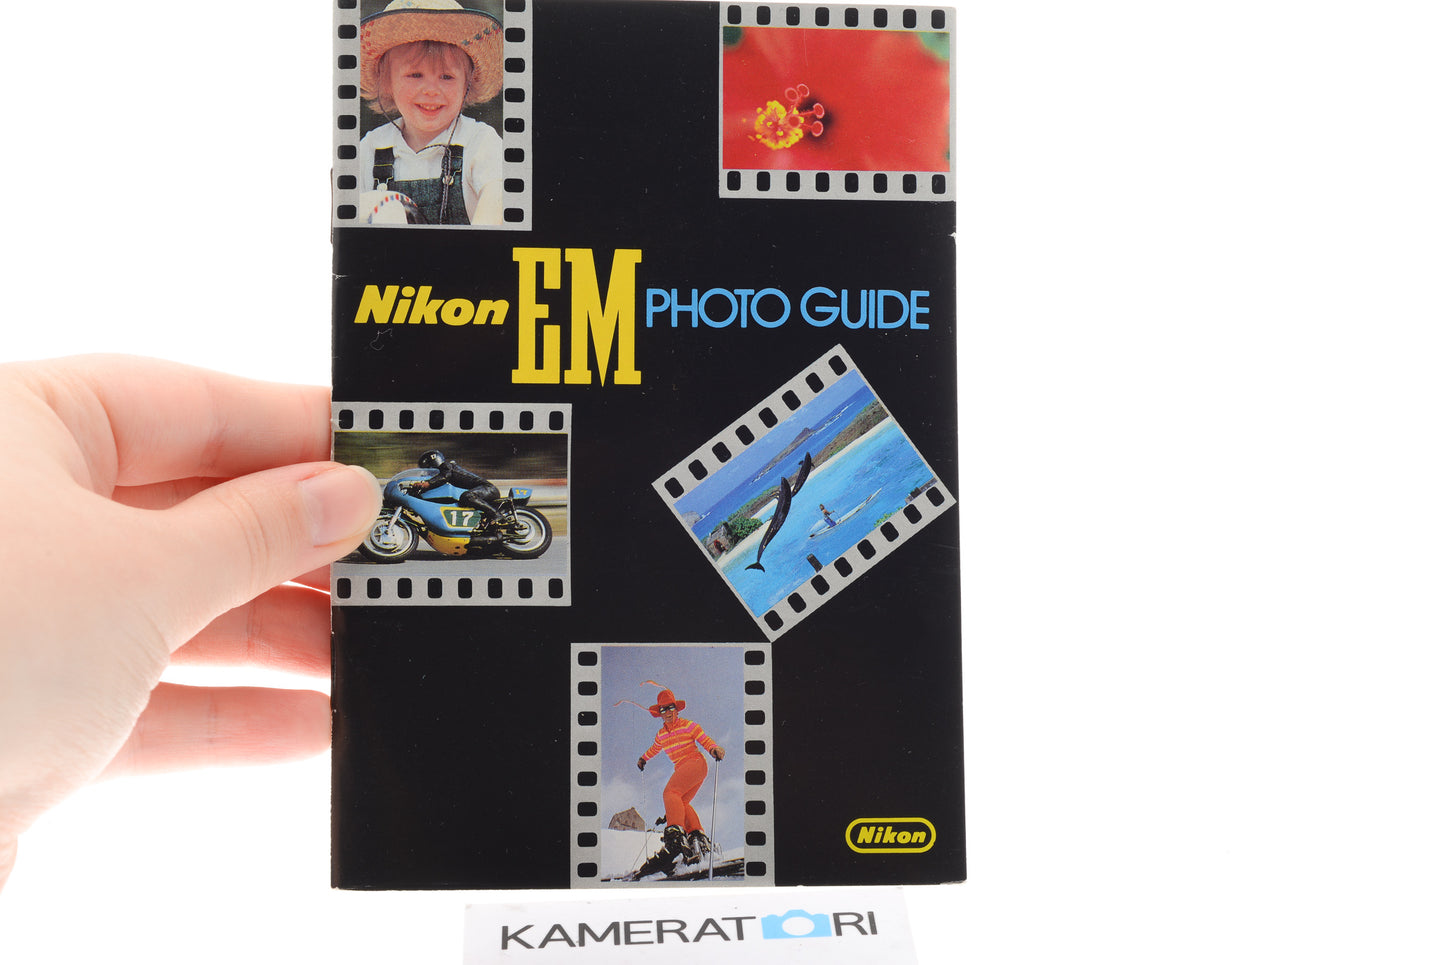 Nikon EM Photo Guide